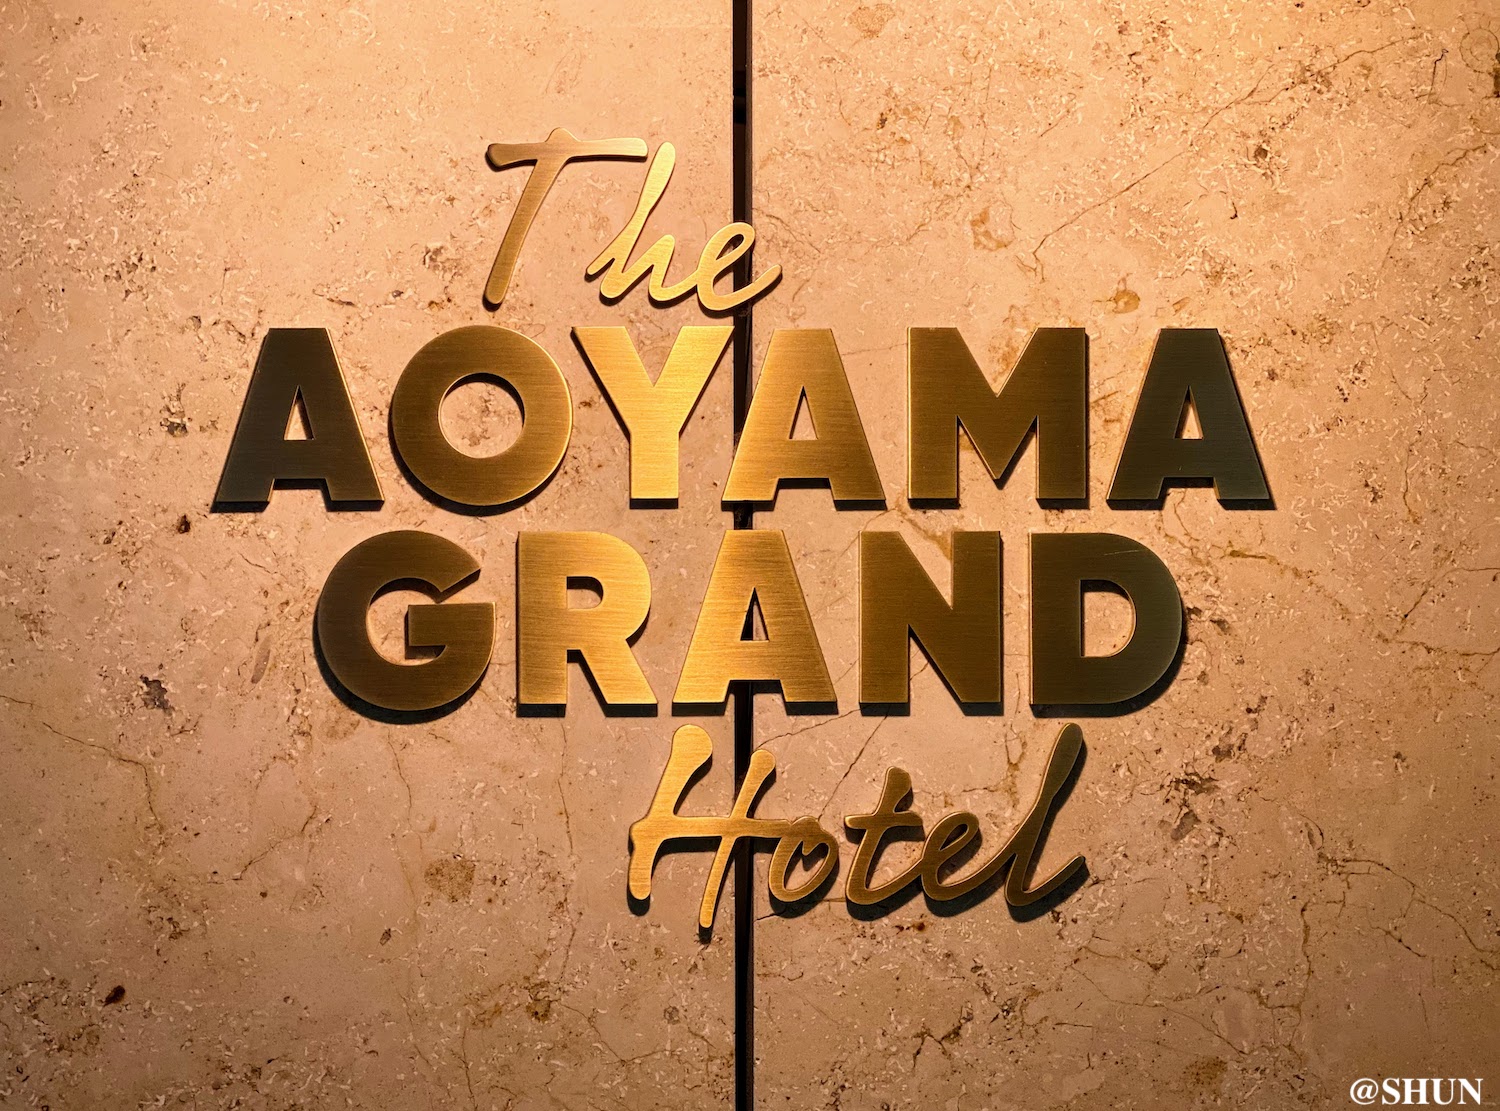 AOYAMA GRAND HOTEL